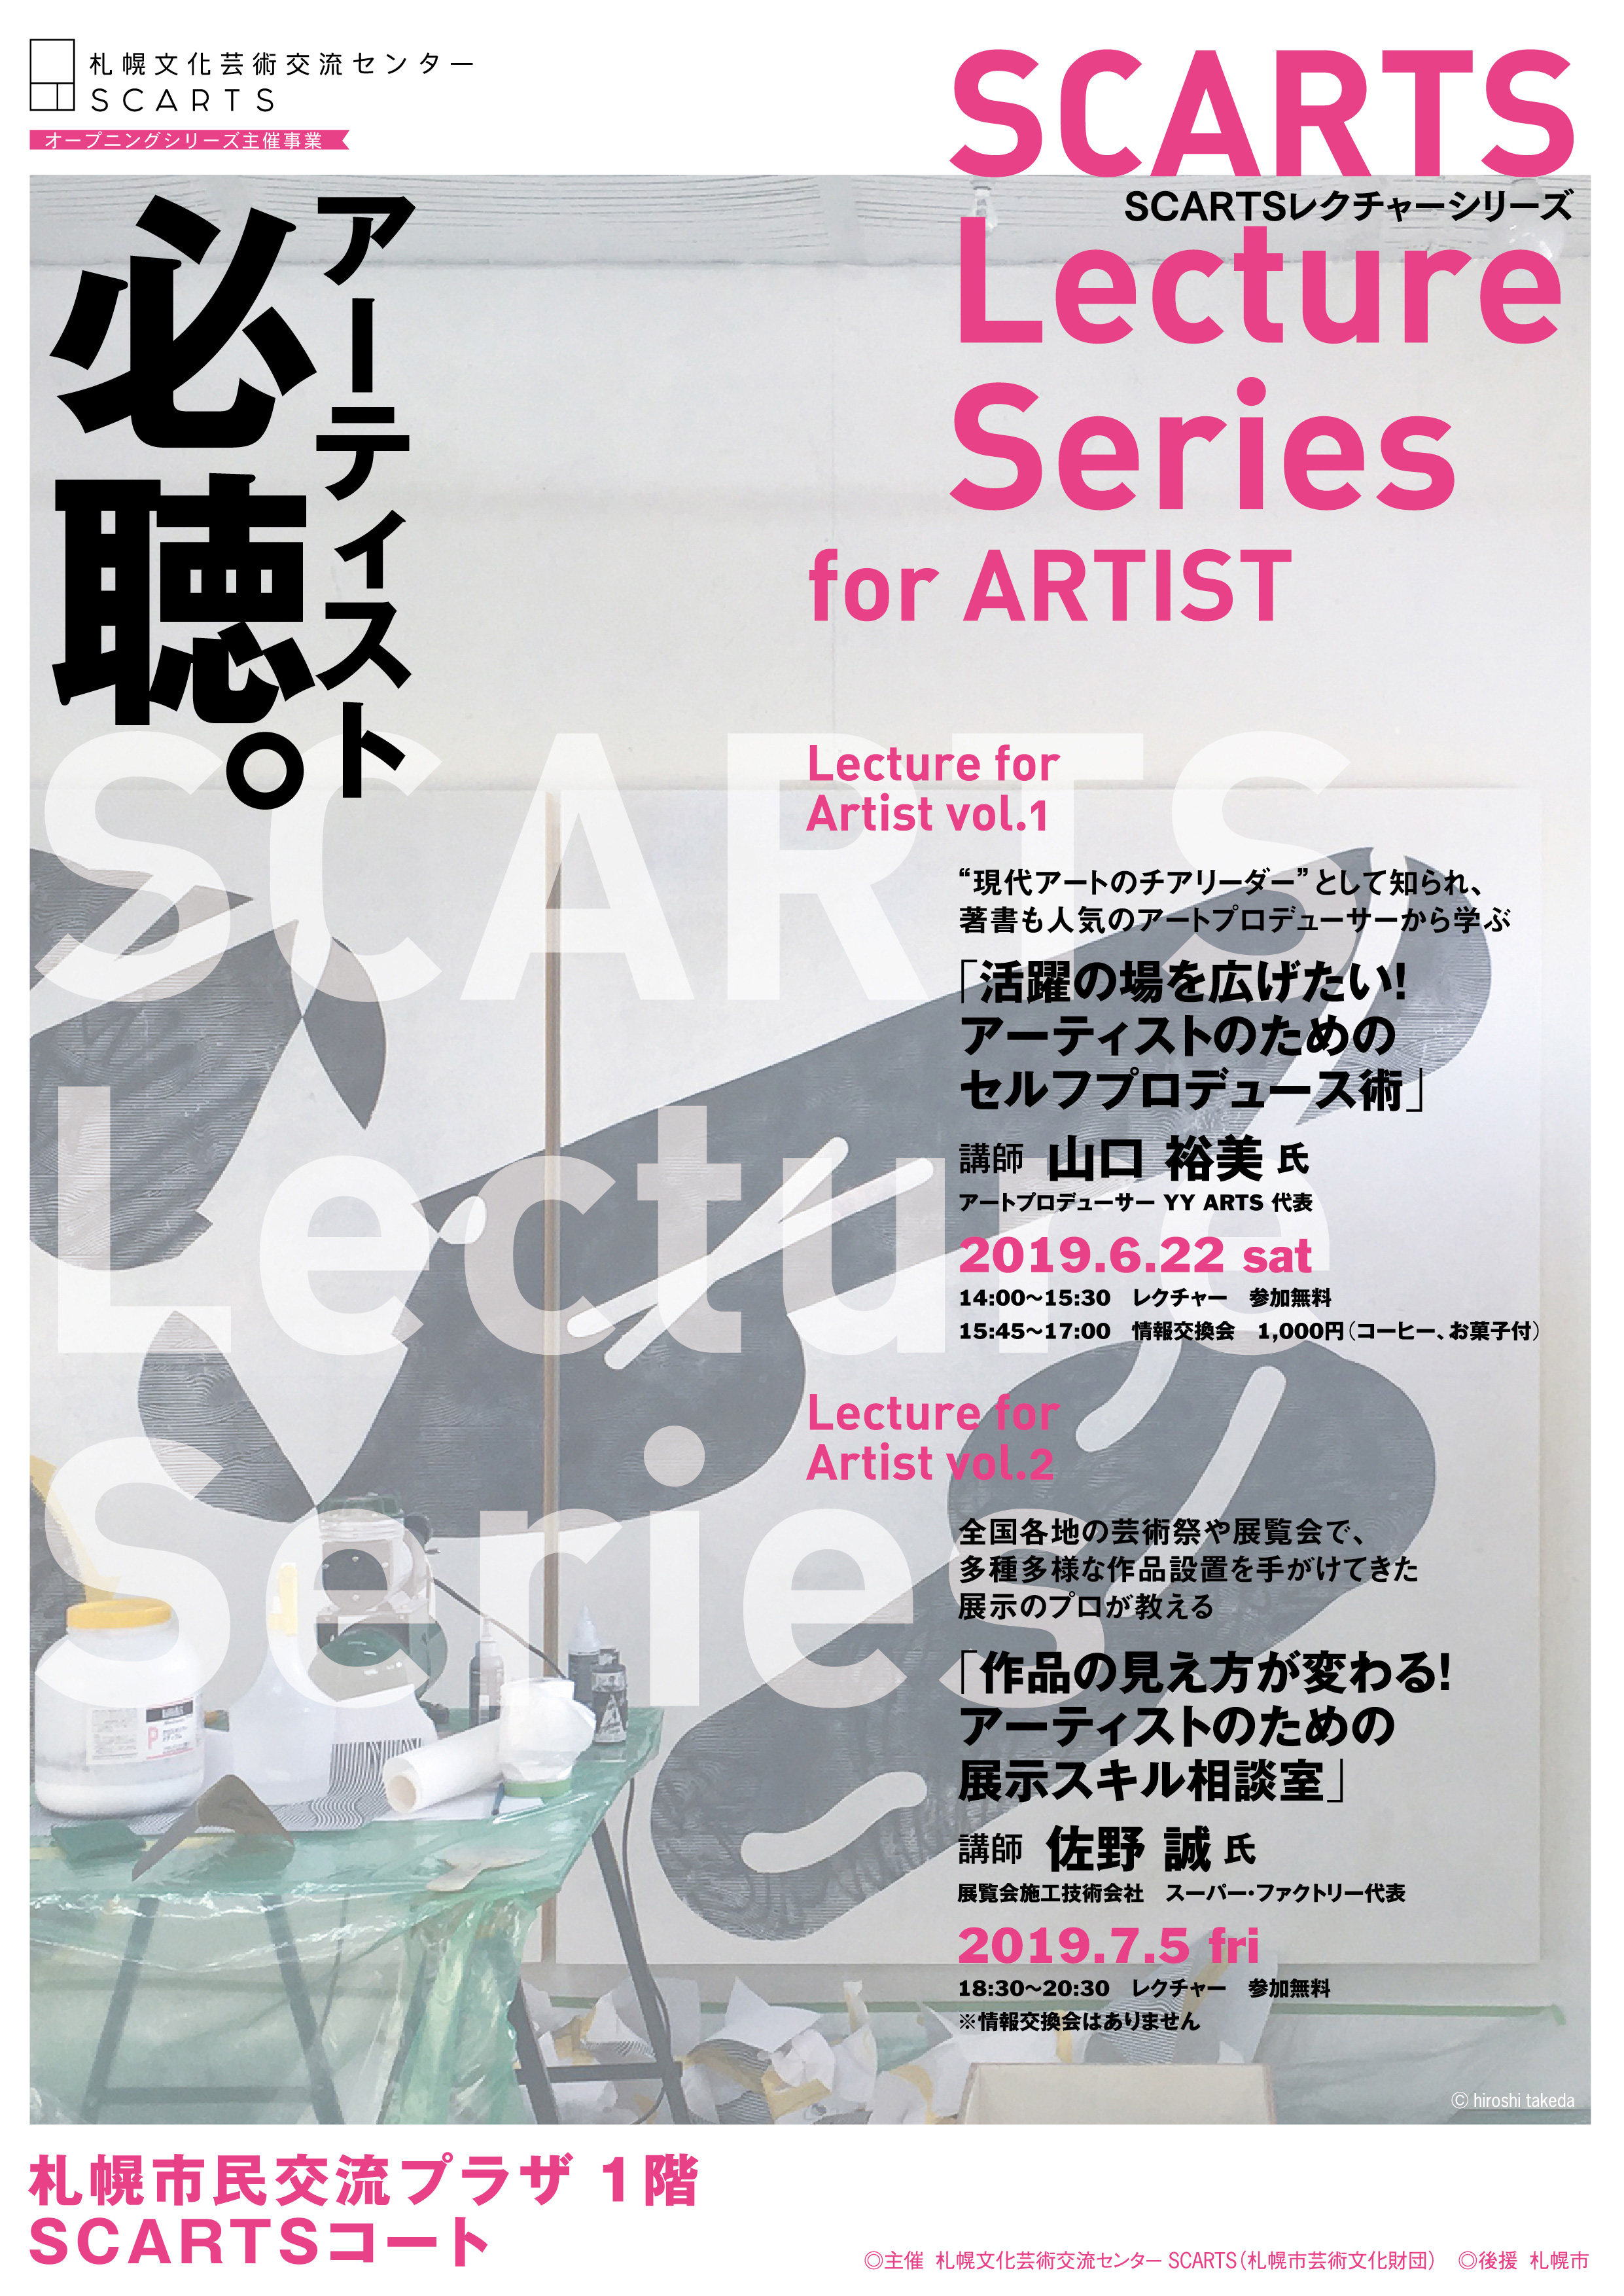 SCARTSレクチャーシリーズ for ARTIST vol.1「活躍の場を広げたい！アーティストのためのセルフプロデュース術」のイメージ2枚目